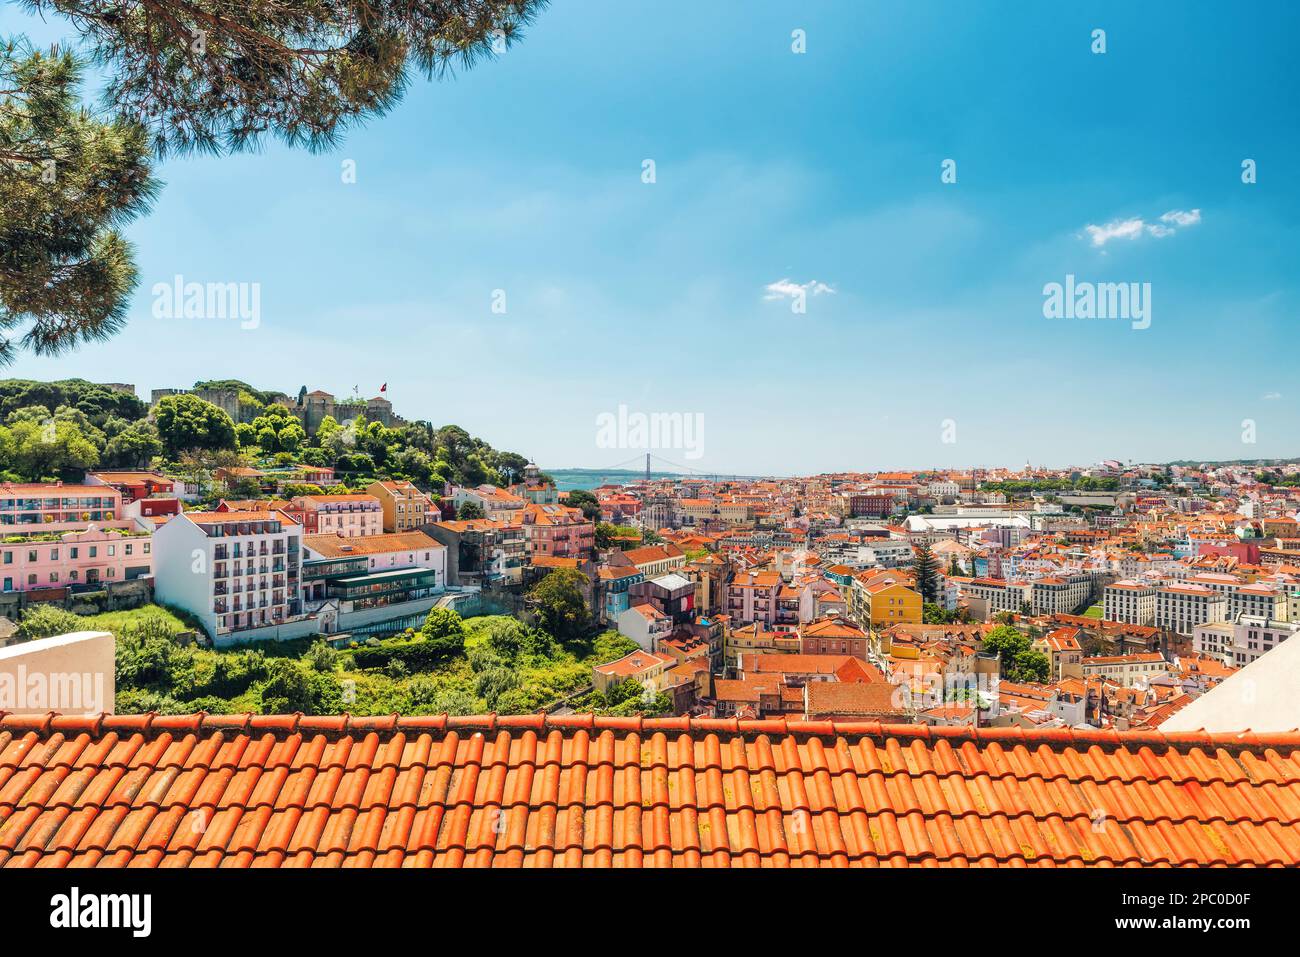 Lisbonne, Portugal. Vue panoramique sur la vieille ville de Lisbonne avec ses toits d'orange et son château sur la colline. Destination du voyage Banque D'Images